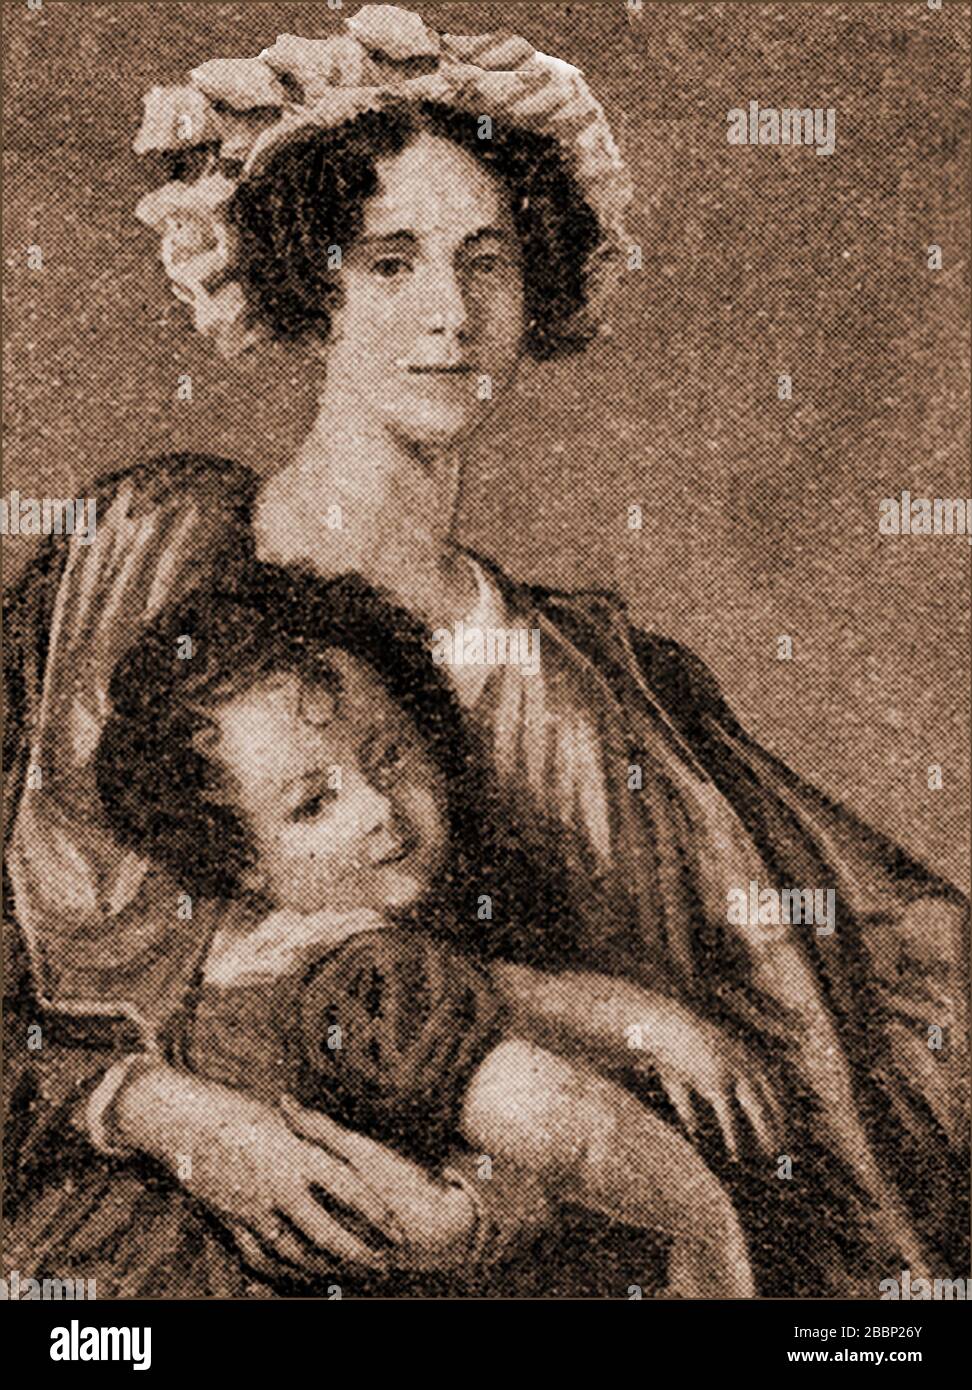 Un retrato temprano de James Clerk Maxwell como un niño con su madre. (Frances Cay). Maxwell (1831-1879) fue un científico y físico matemático escocés. Foto de stock